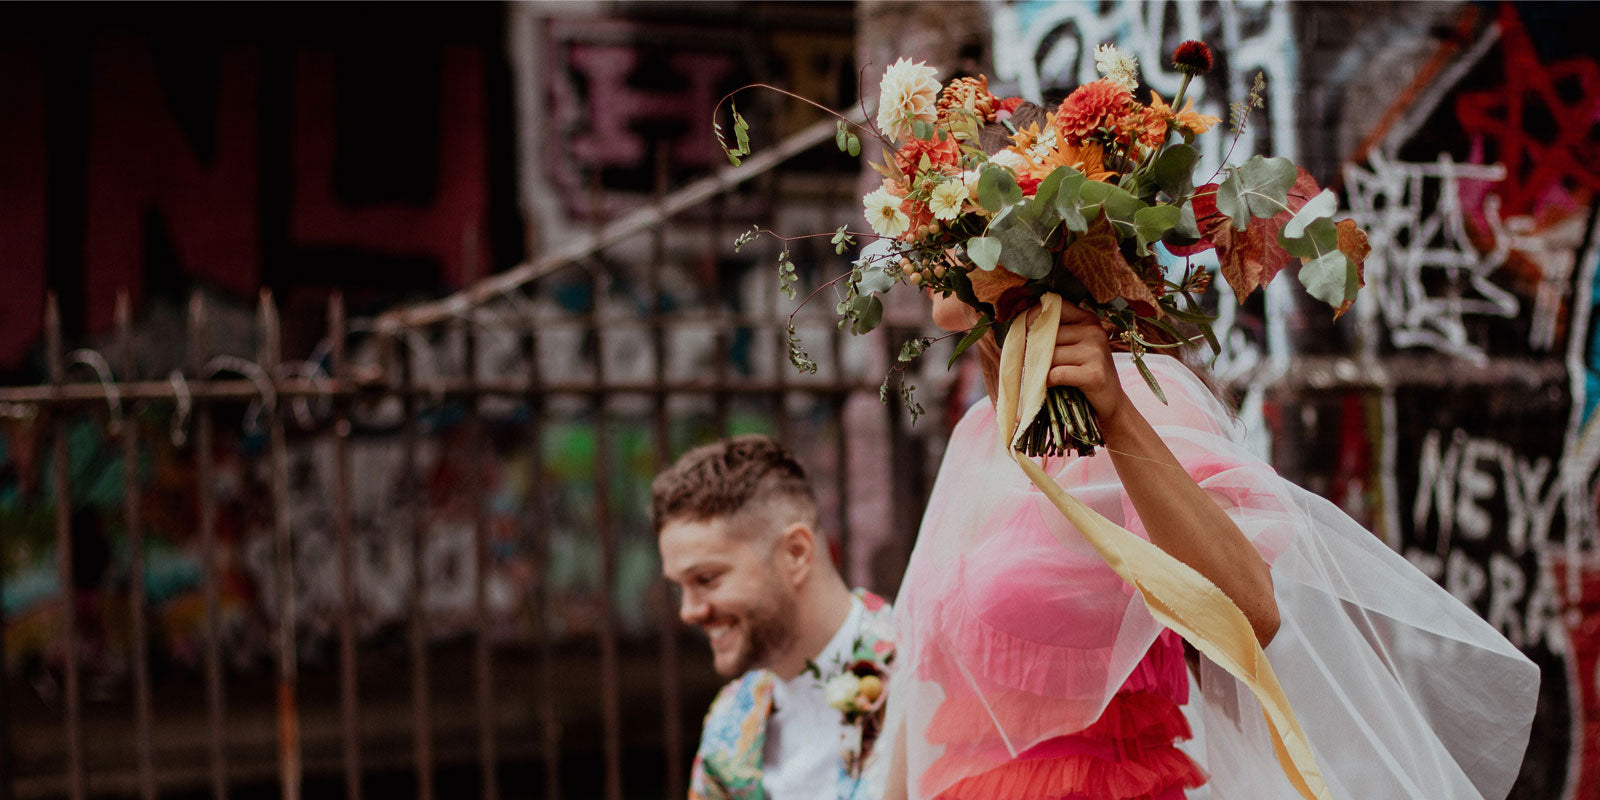 Jullie bruiloft, jullie stijl: jouw alternatief voor de conventionele bruidsjurk